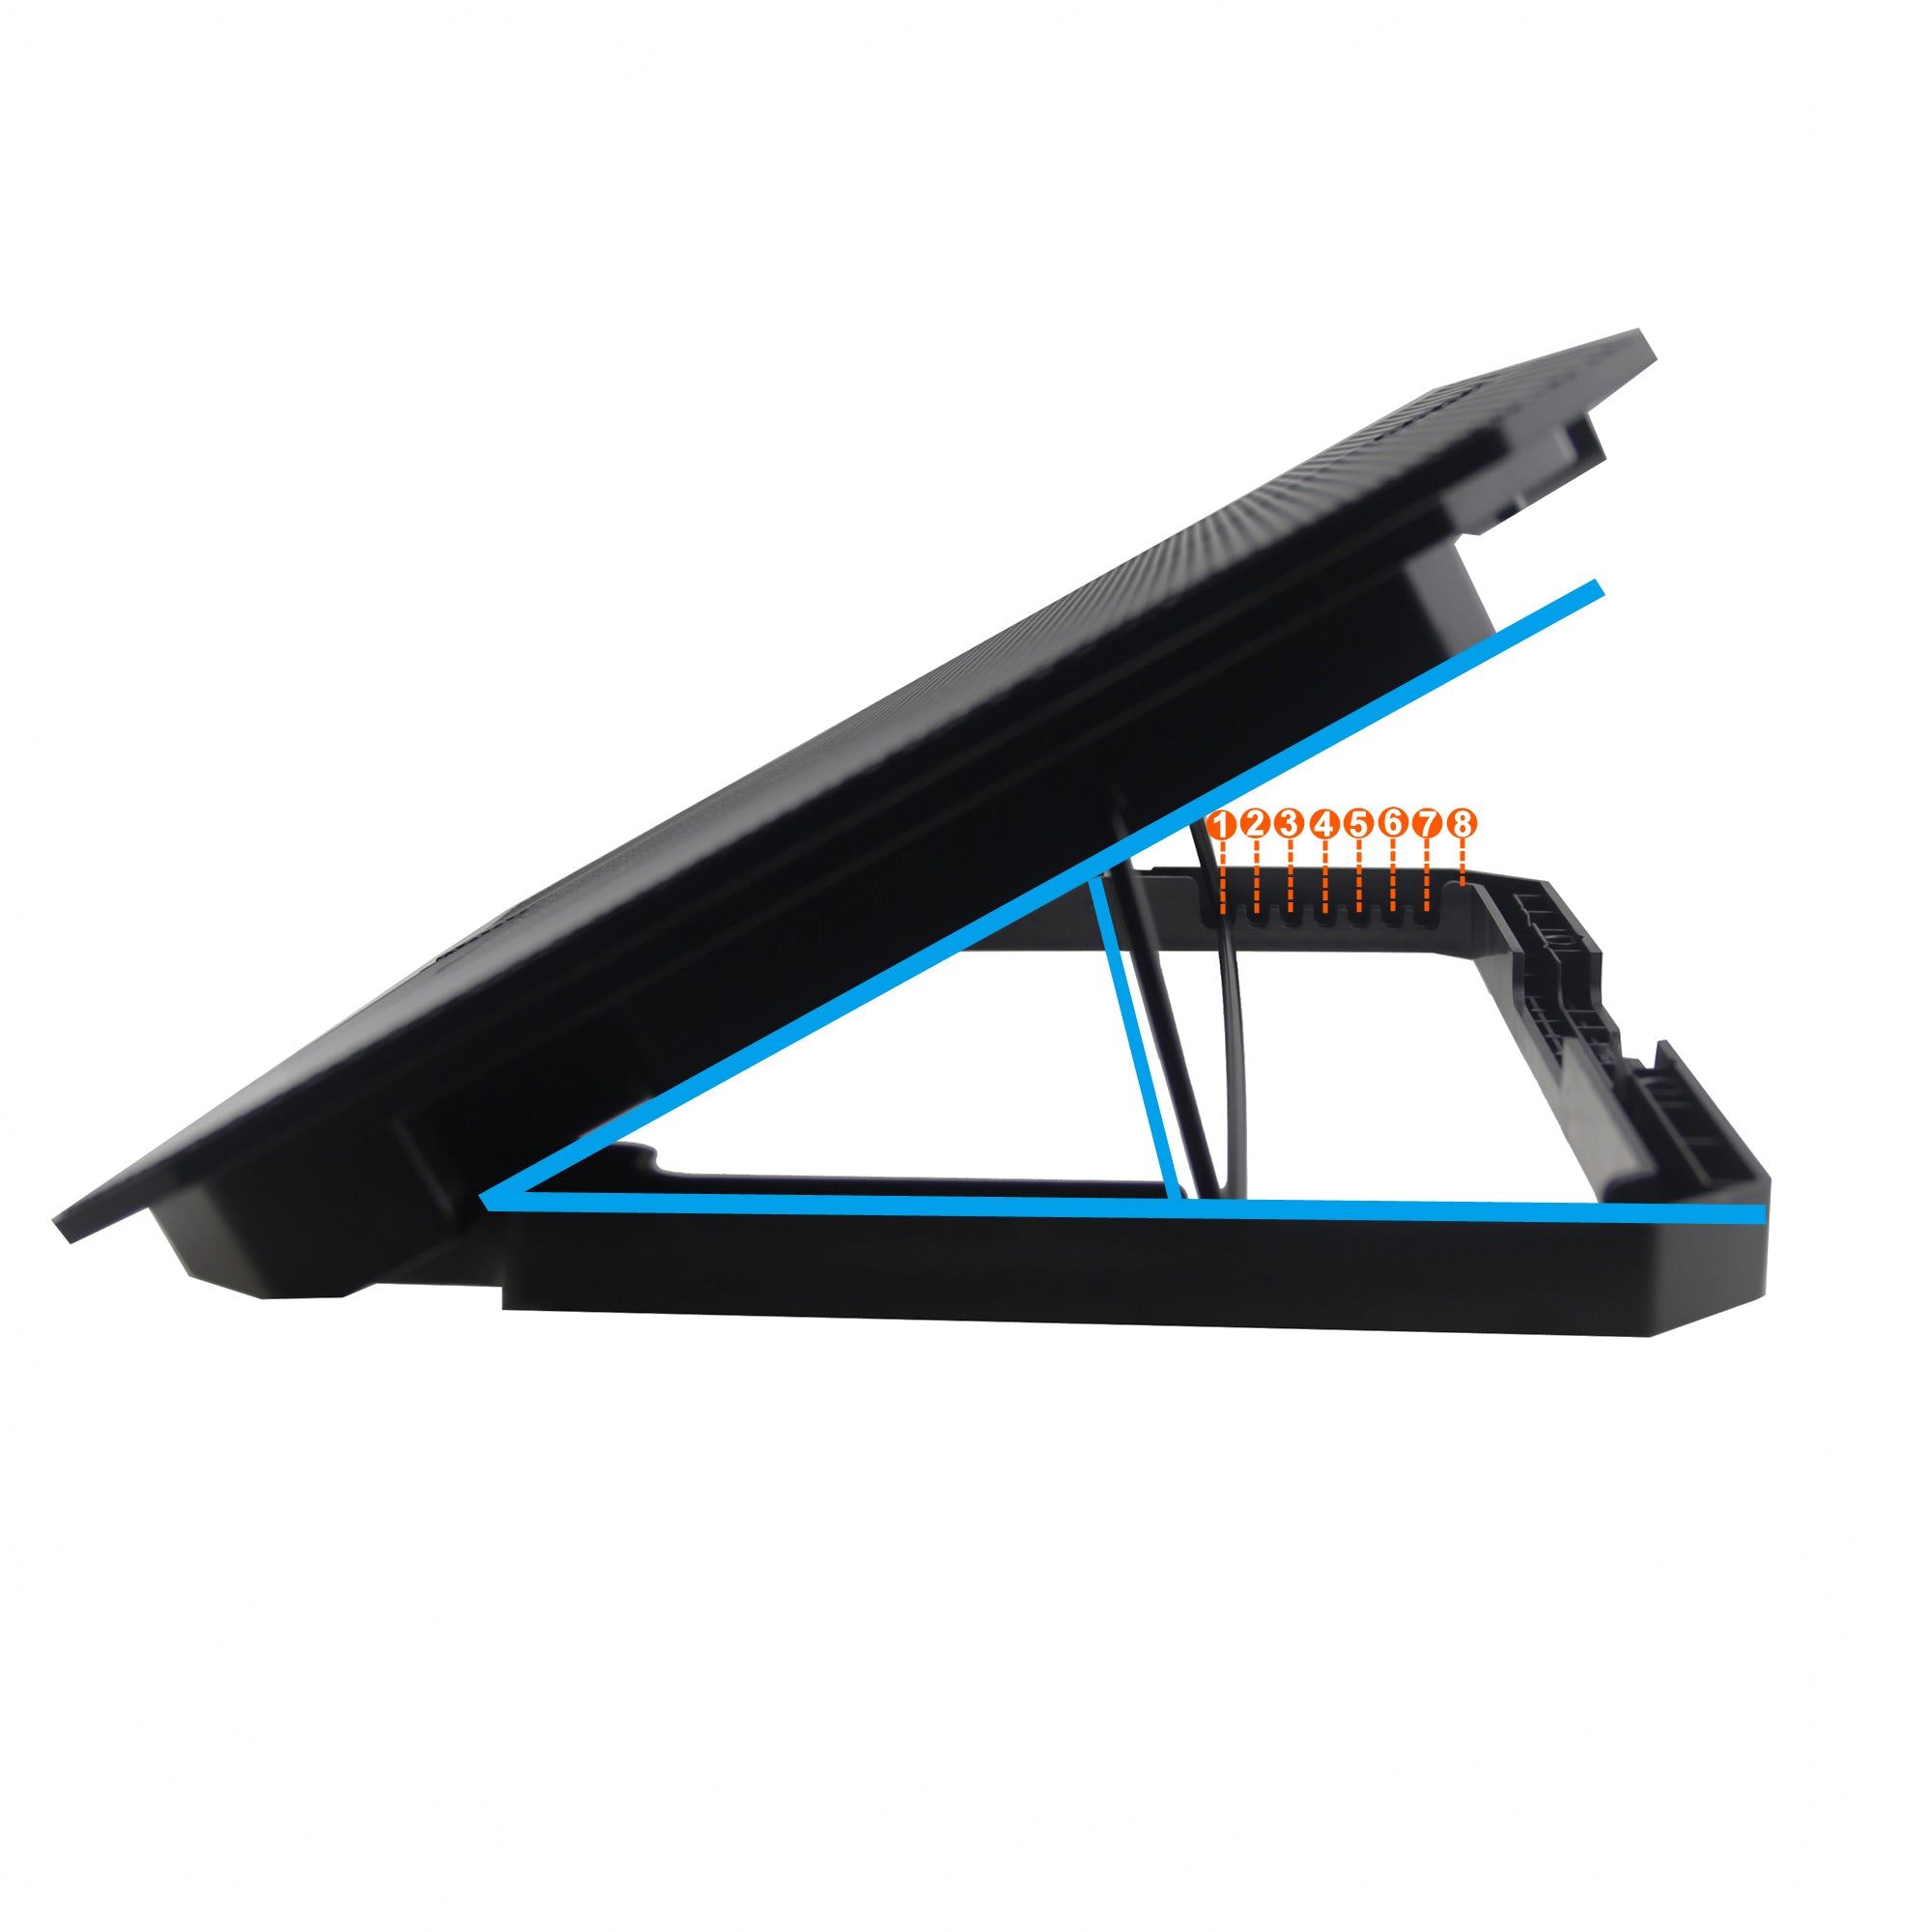 N11 8-Gear Height Adjustable Mute Notebook Dual Fan Cooler Desktop Laptop Cooling Stand - Blue Light